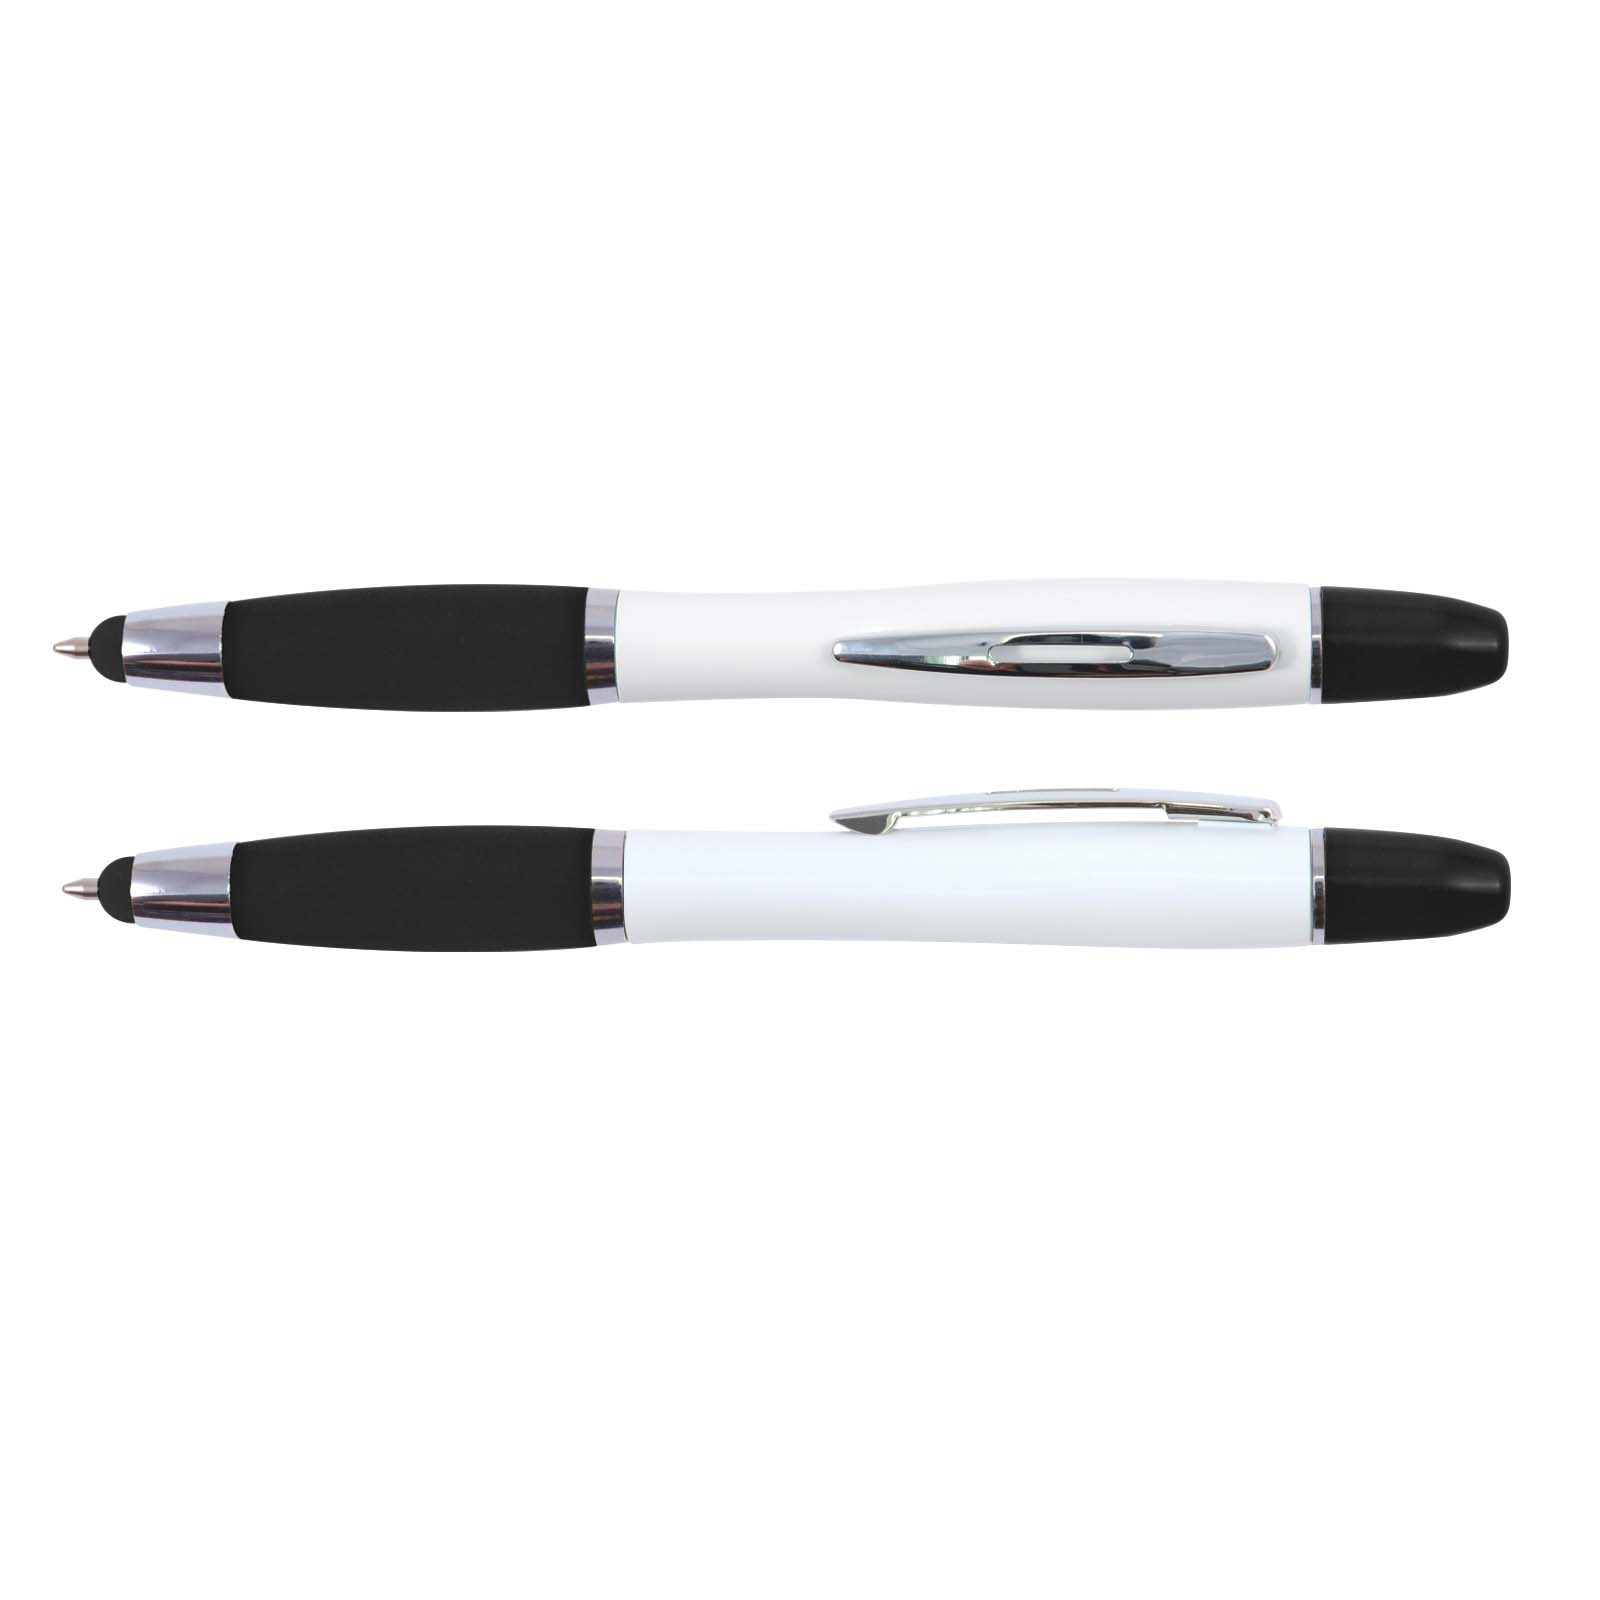 Pens Viva Stylus Pen & Highlighter &